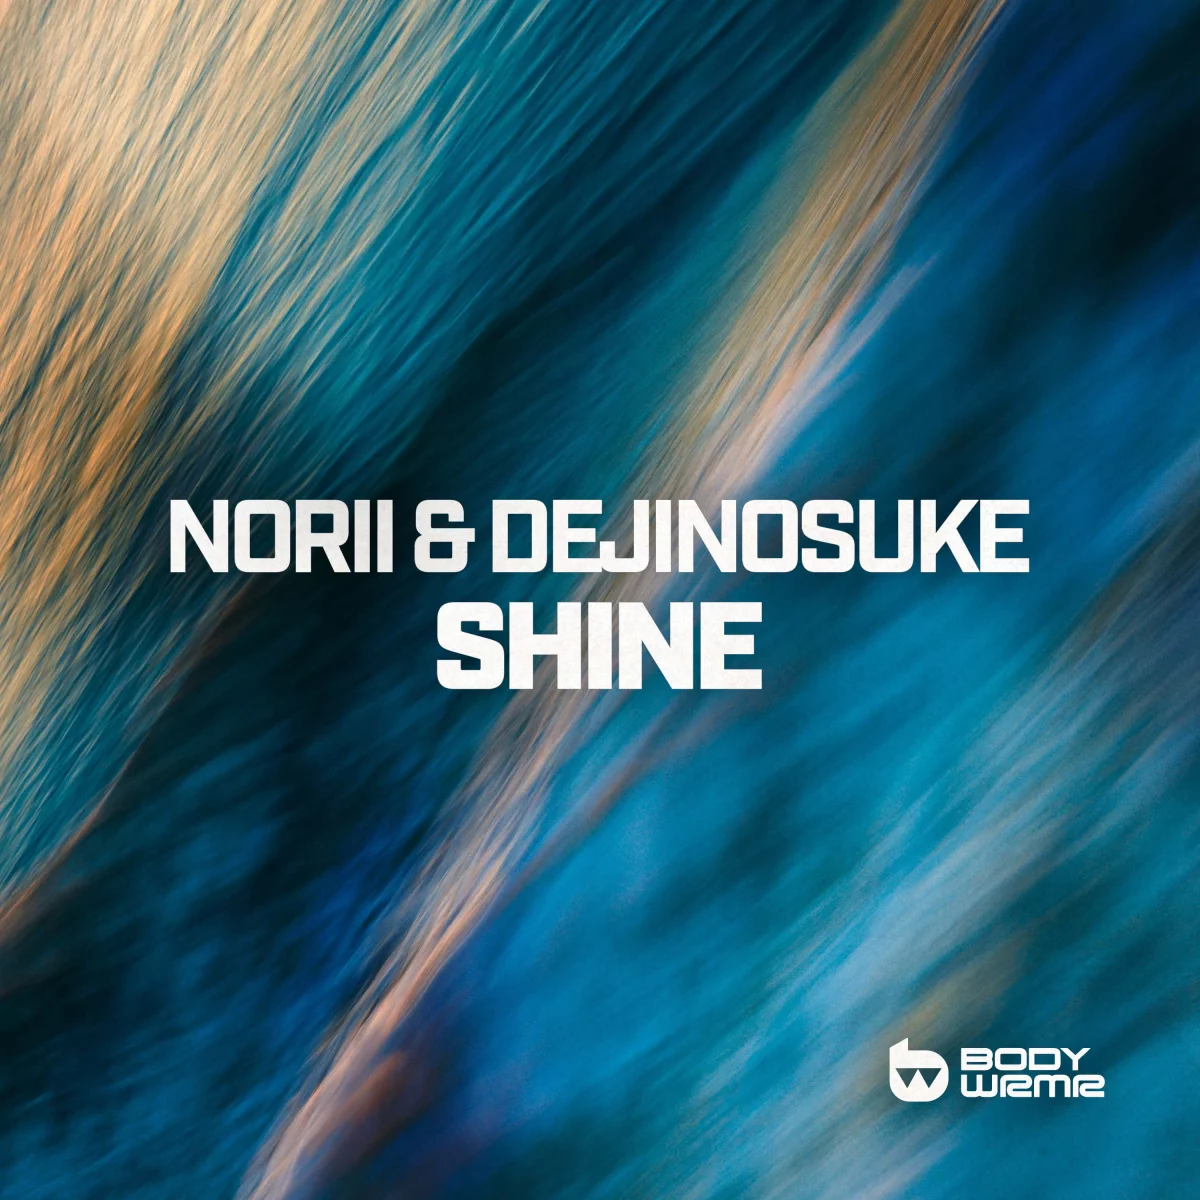 Shine - NORII⁠ & dejinosuke⁠ 